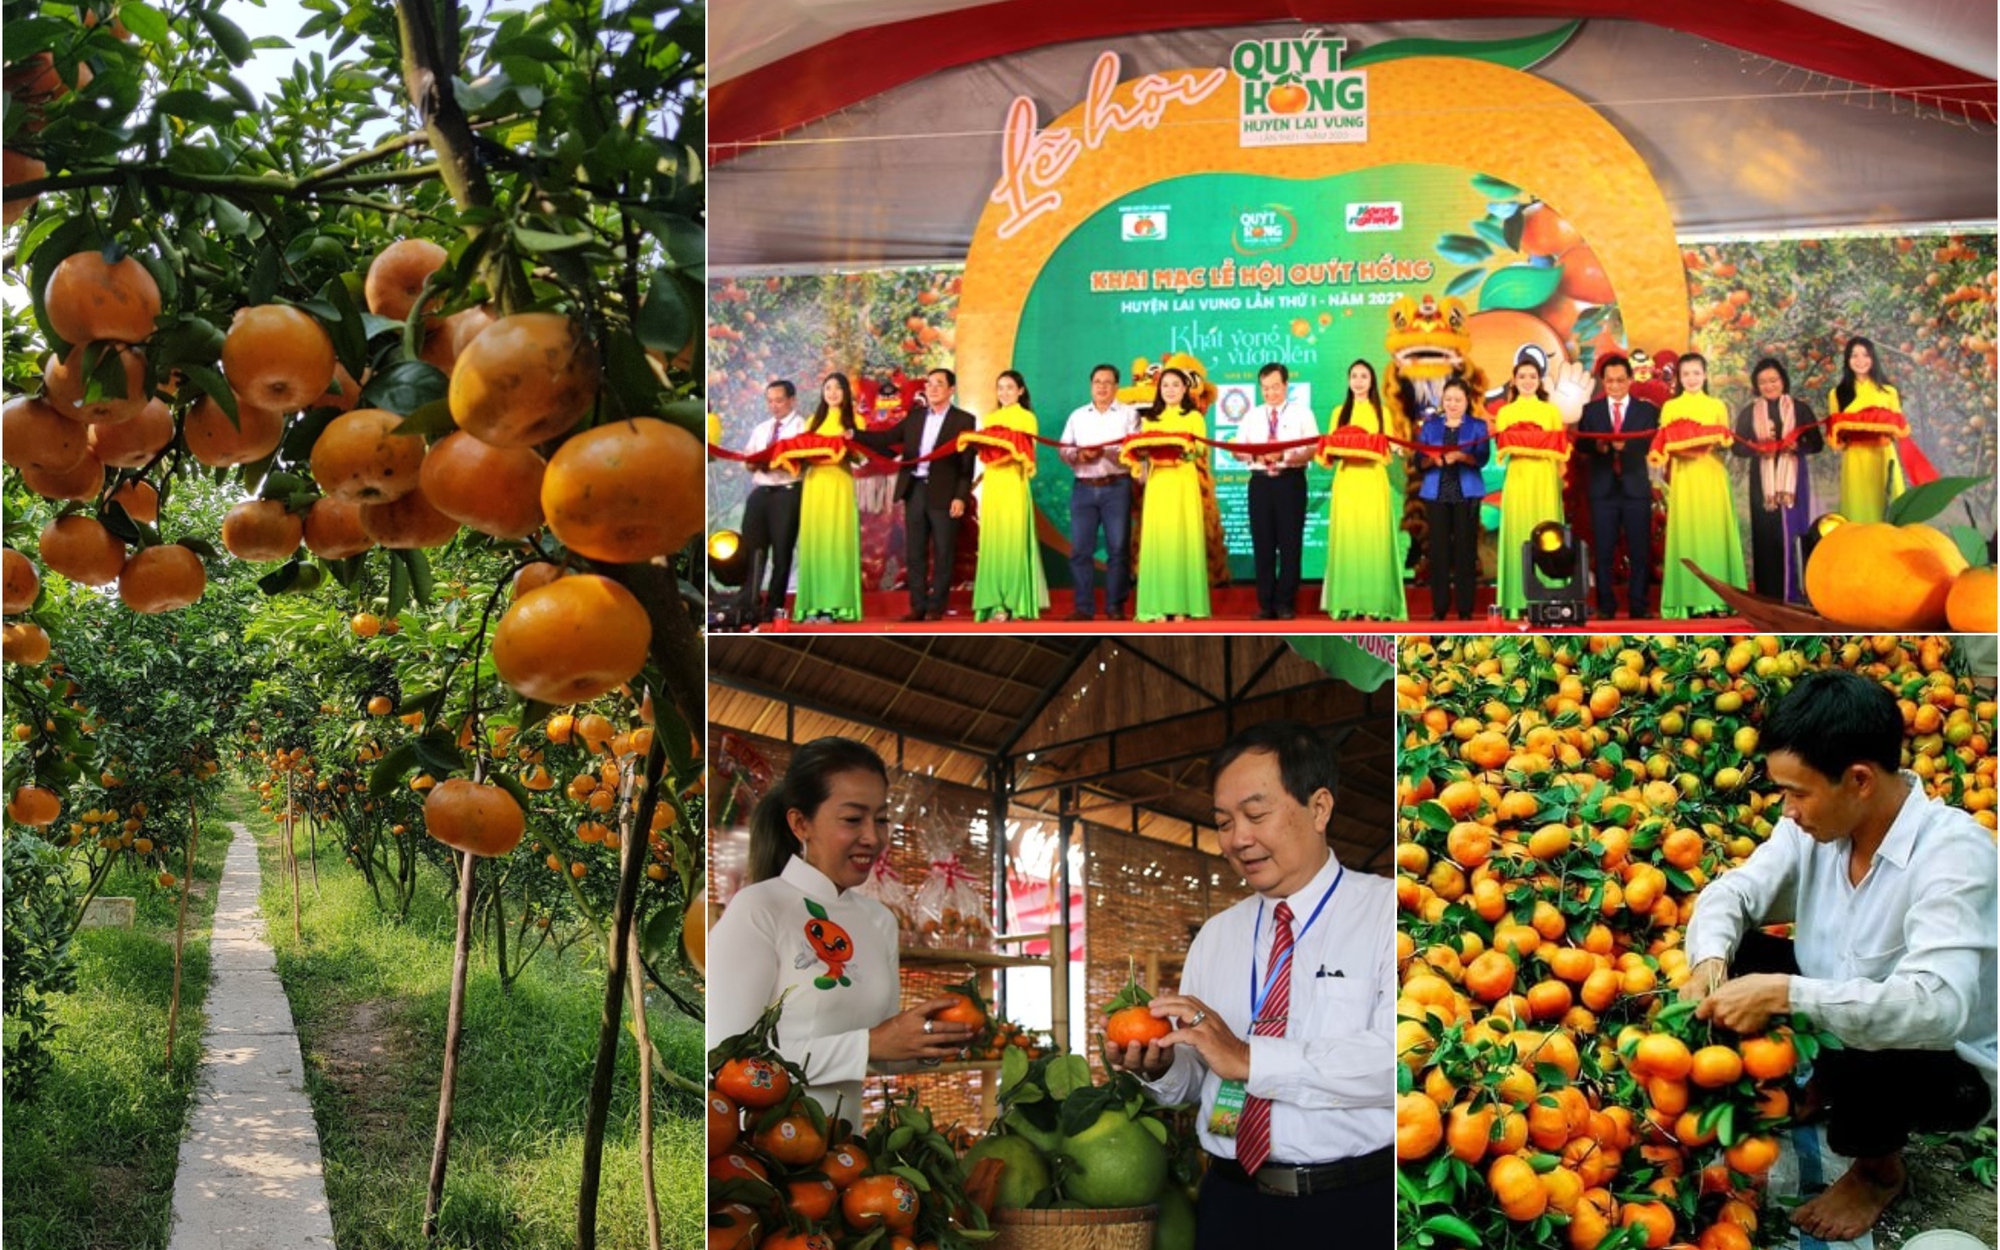 Lễ hội Quýt hồng Lai Vung mở ra hướng phát triển nông nghiệp cho Đồng Tháp